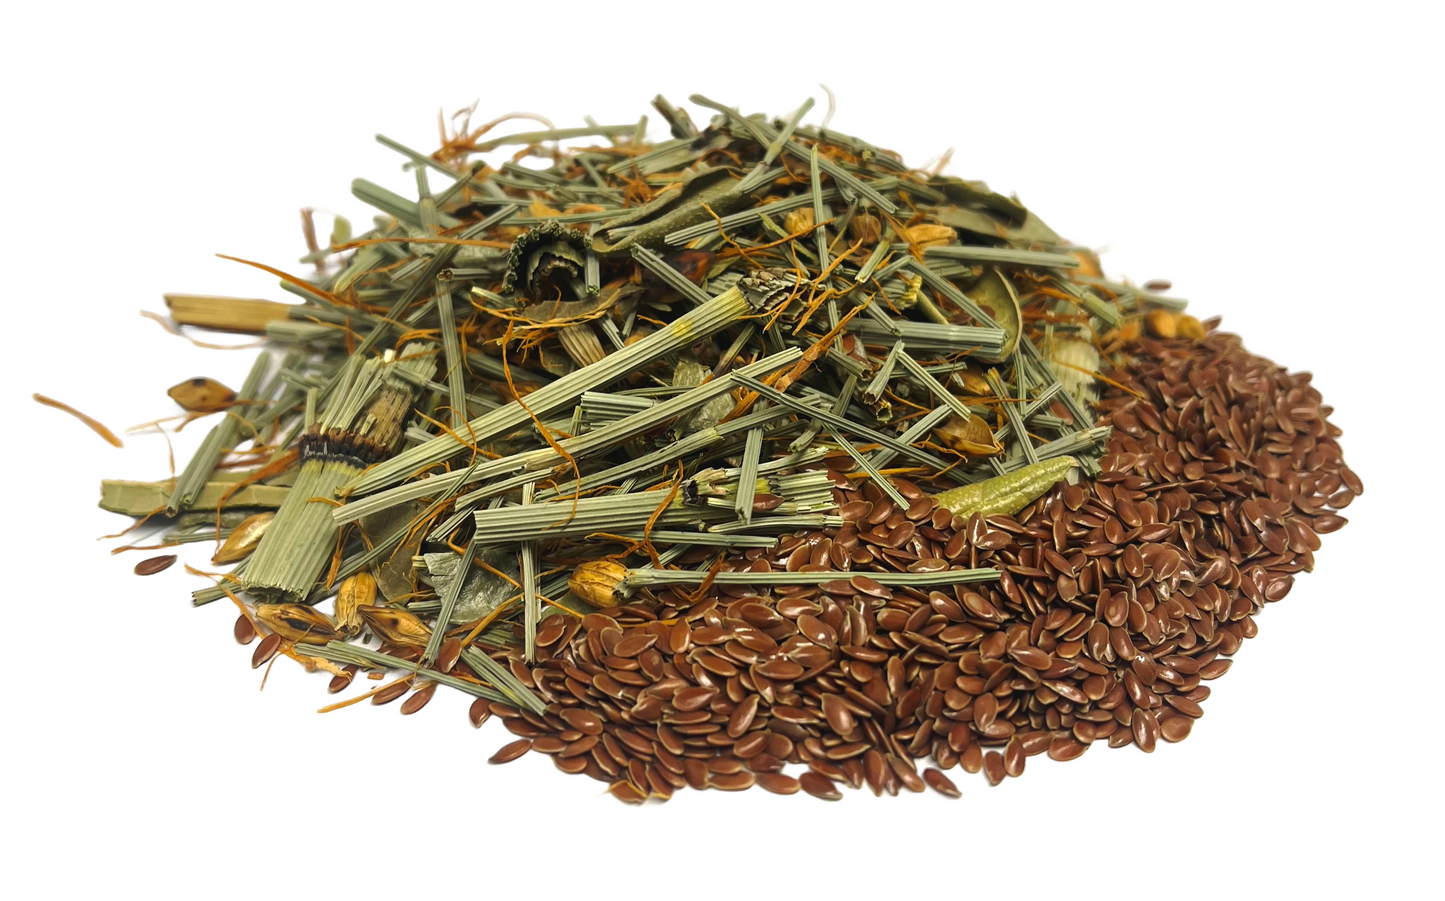 Emollient Tea Blend Emoliente Herbal Infusion Tea (150g) HQ Herb Nuestra Salud